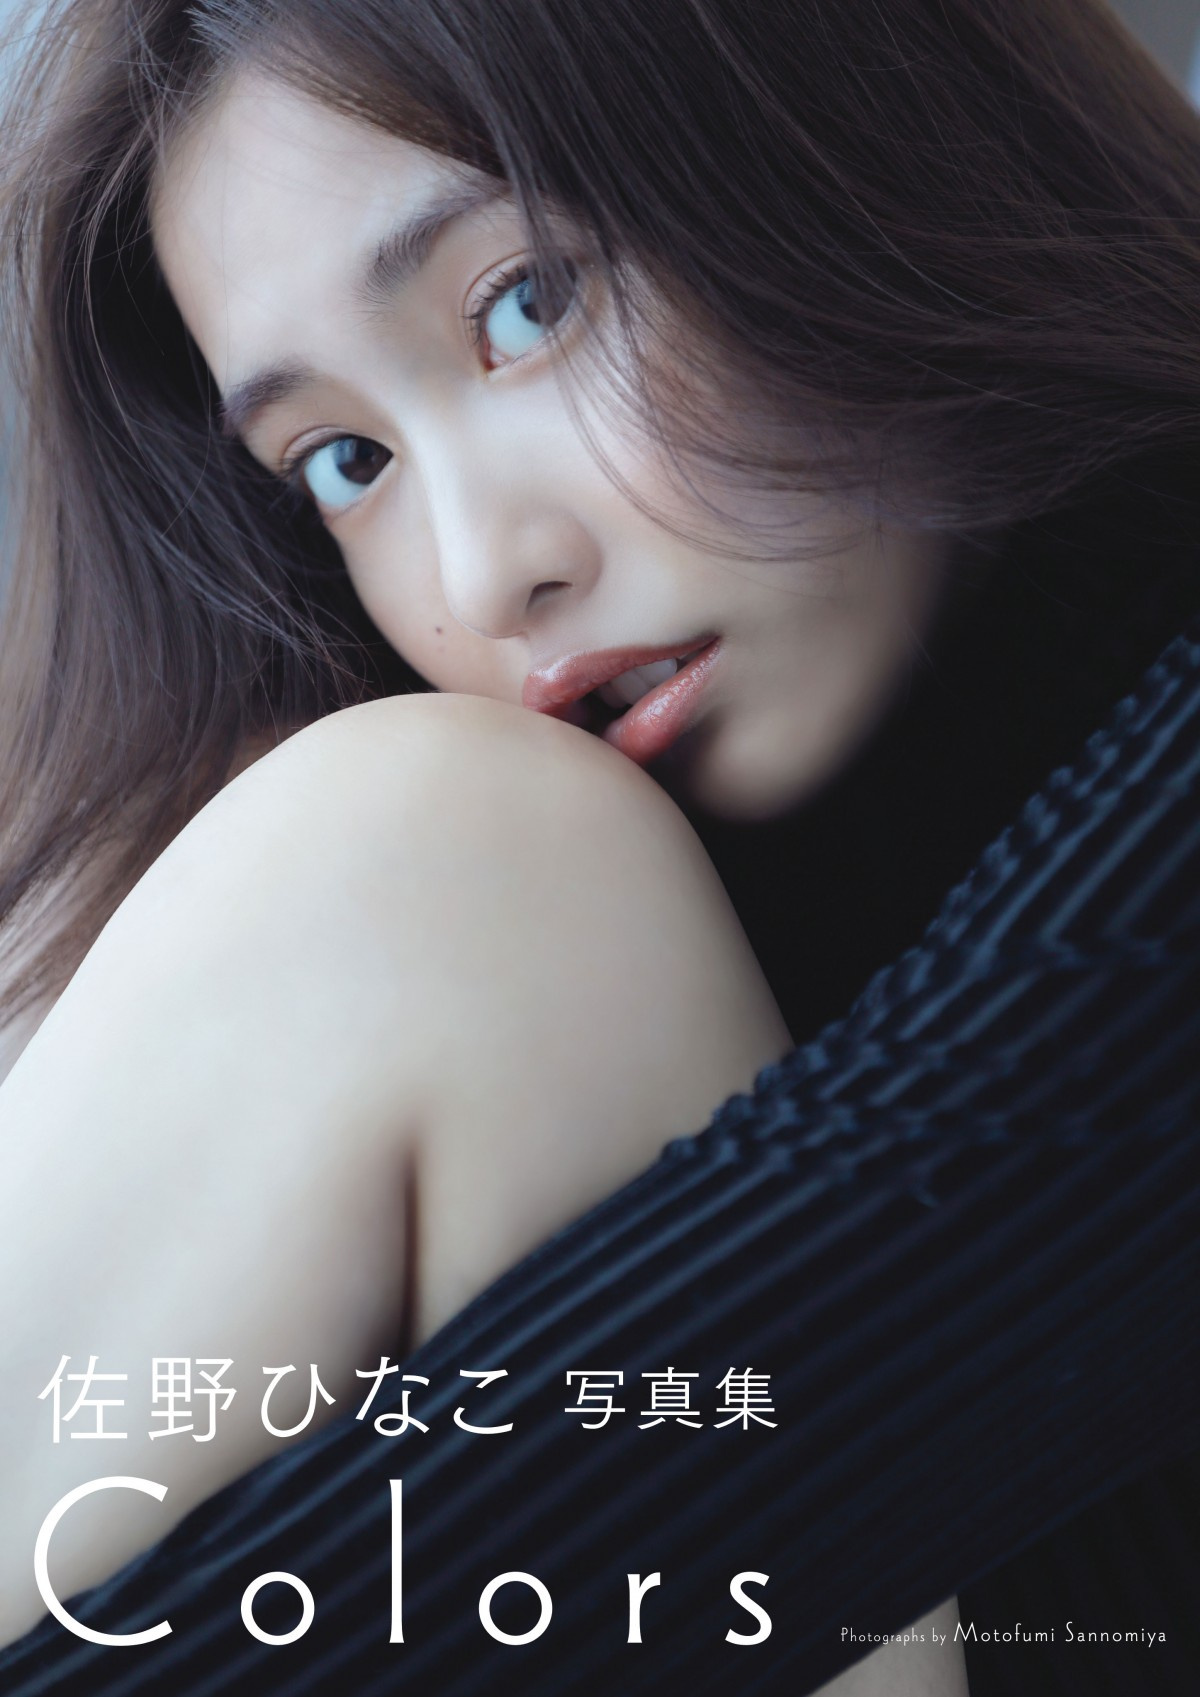 佐野ひなこ 写真集 2位 過去最高に磨きのかかったを美くびれを大胆披露 Oricon News